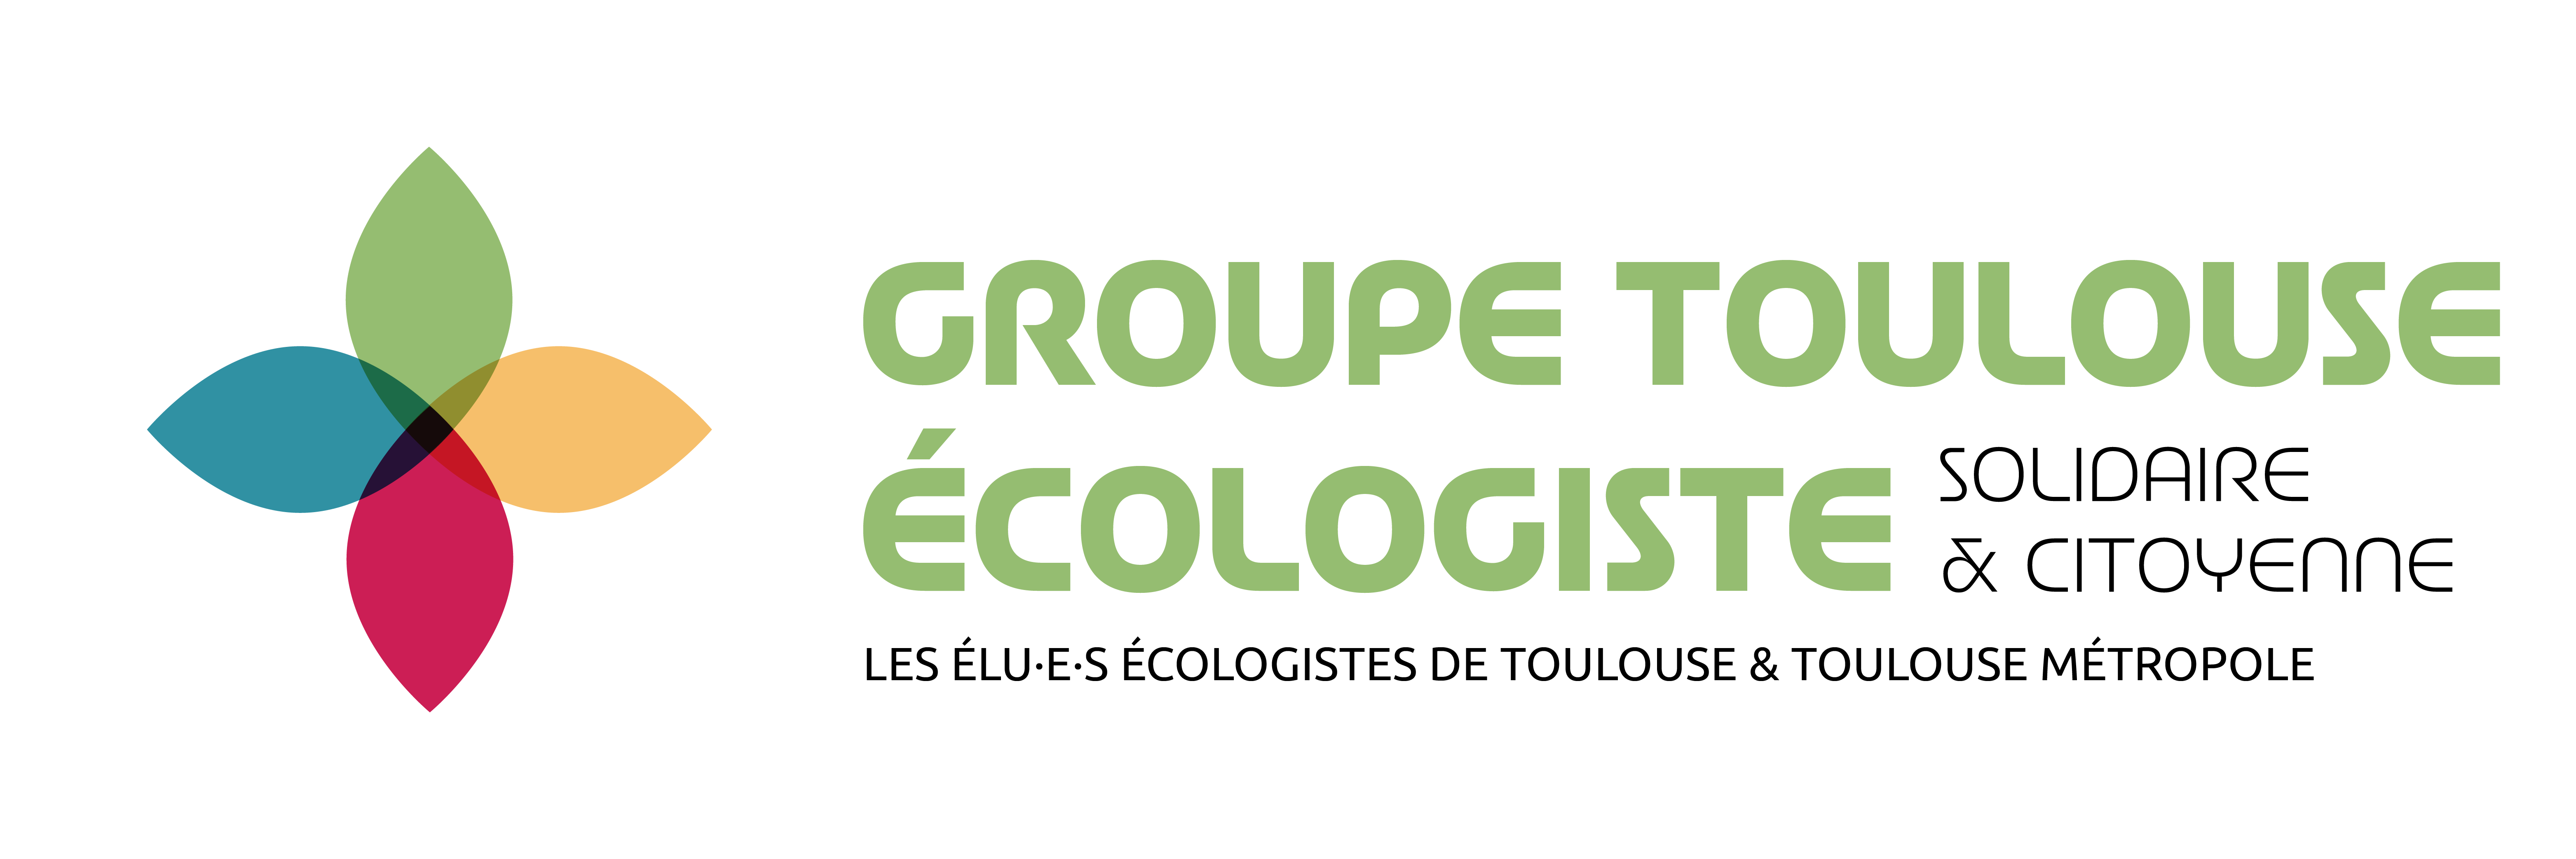 Bannière de Groupe Toulouse Ecologiste, Solidaire & Citoyenne